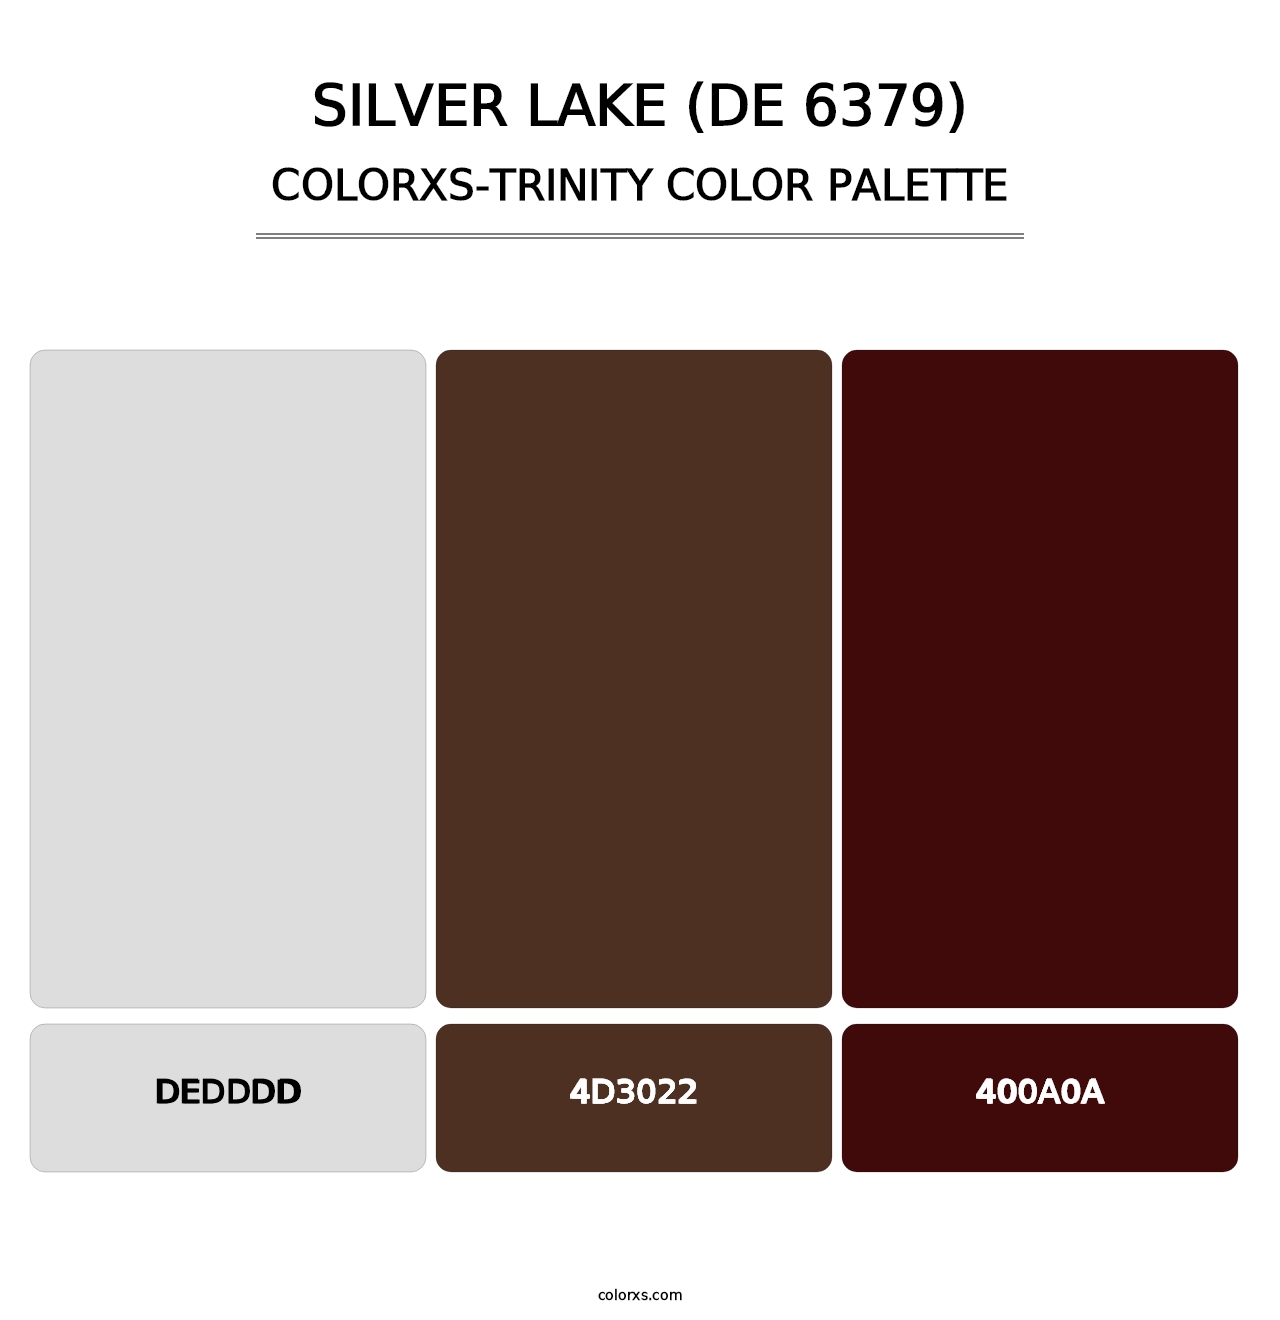 Silver Lake (DE 6379) - Colorxs Trinity Palette